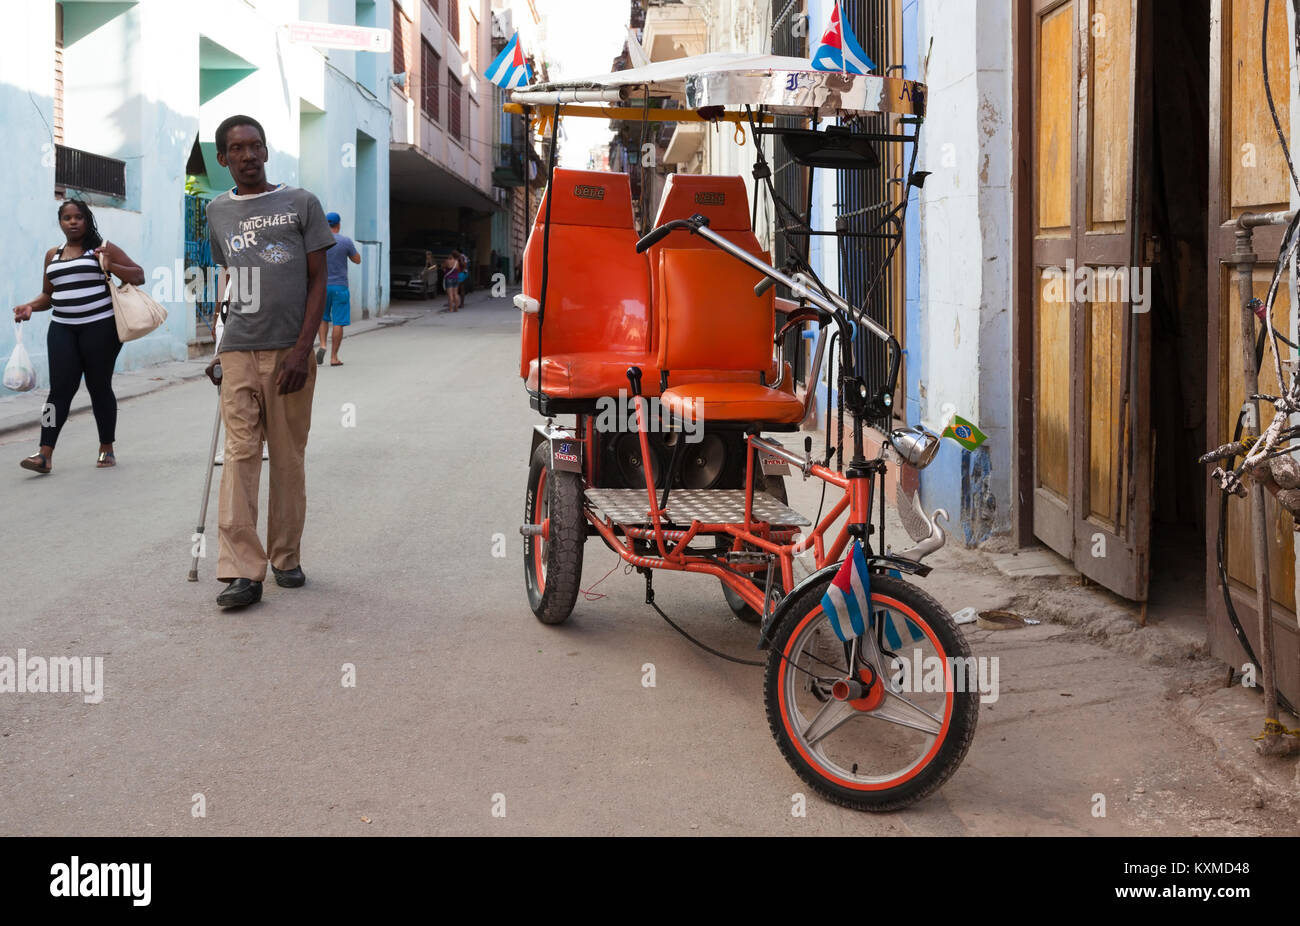 Ein Zyklus Rikscha auf der Straße in Havanna, Kuba. Stockfoto